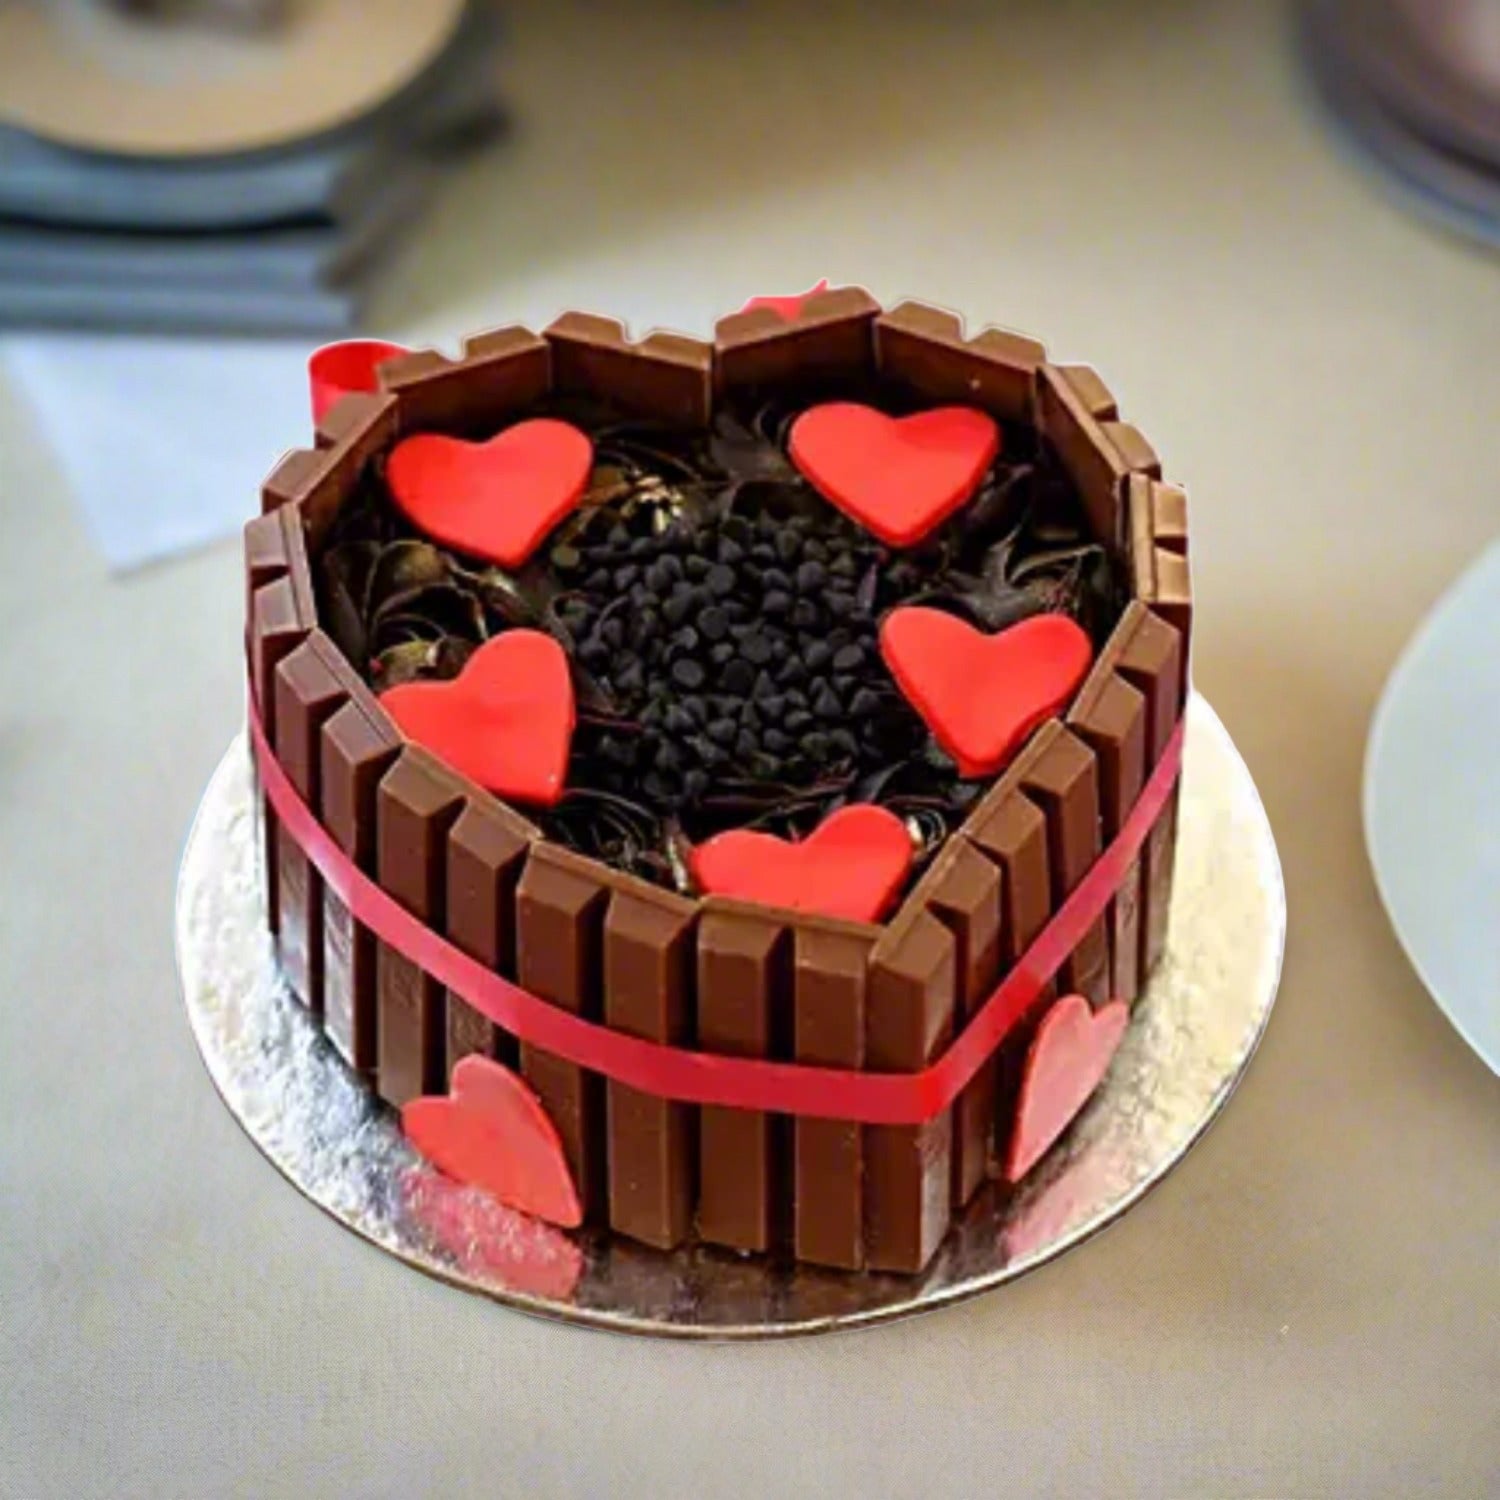 M81) KitKat & Oreo, Gems Birthday Cake (1 Kg). – Tricity 24